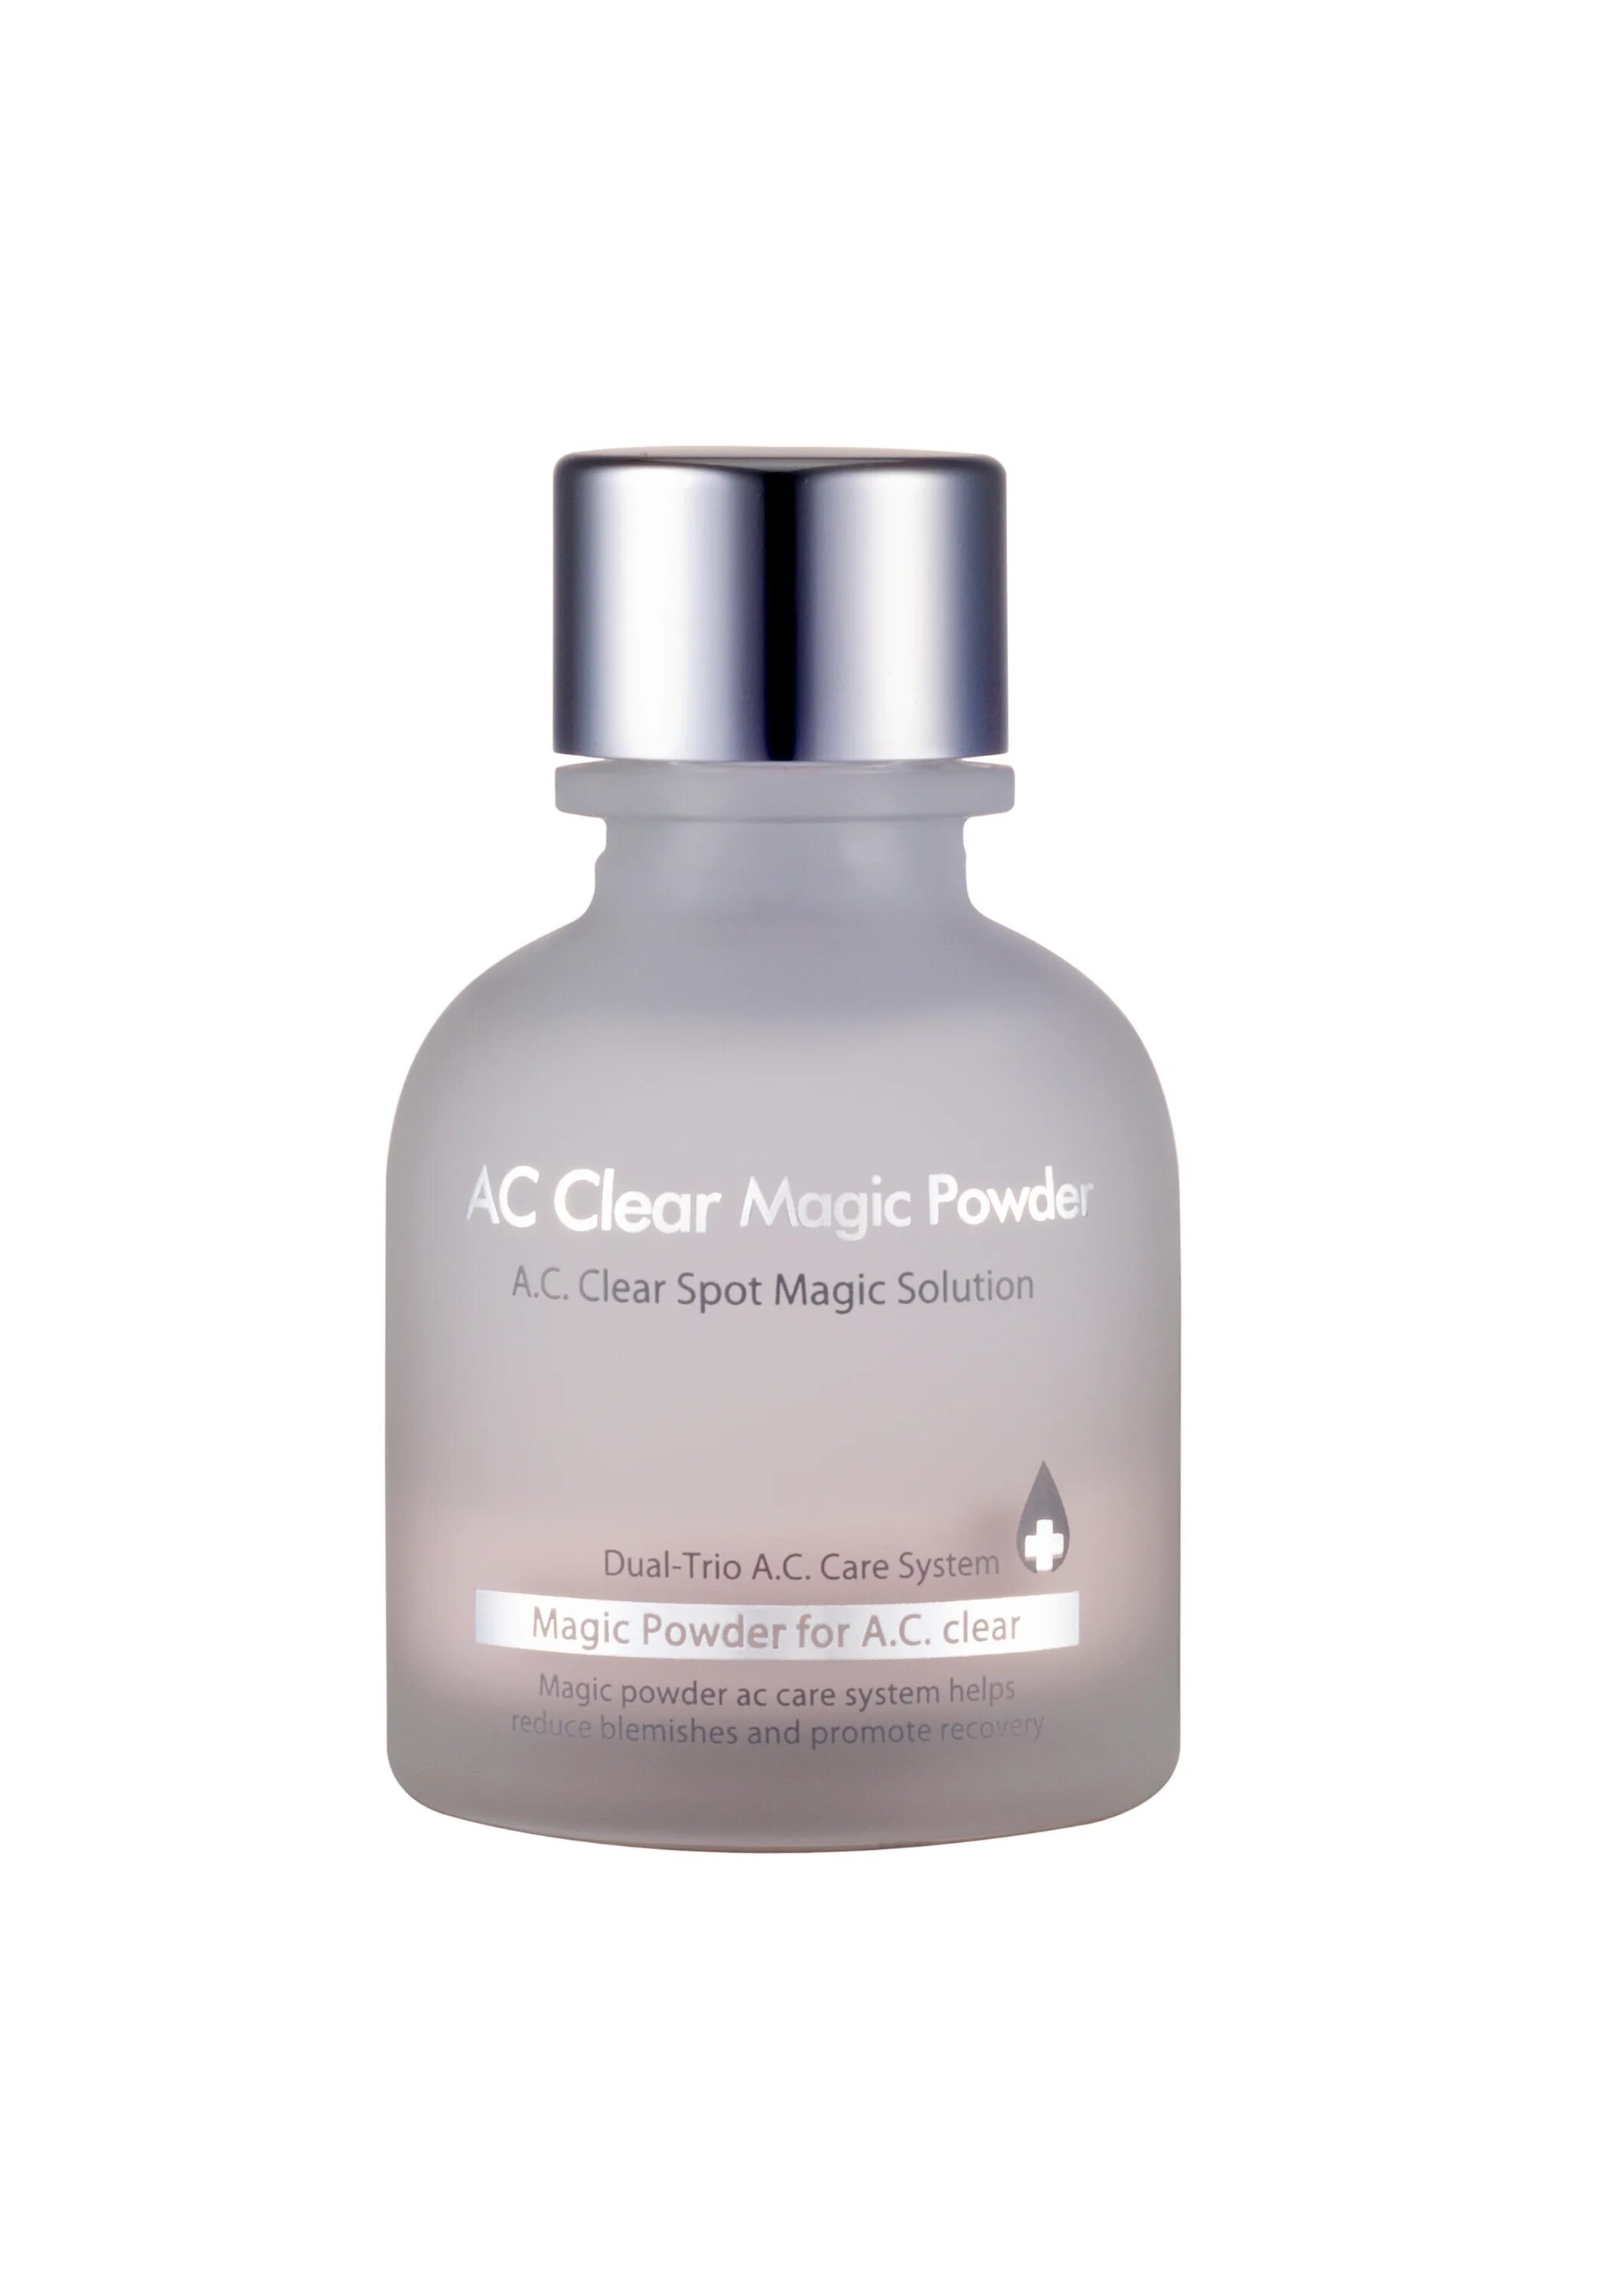 Ac clear. AC Clear Magic Gel. AC Clear Moisture. AC Clear spot Magic Powder the Plant. Magic Powder spot Dr Clear стик.